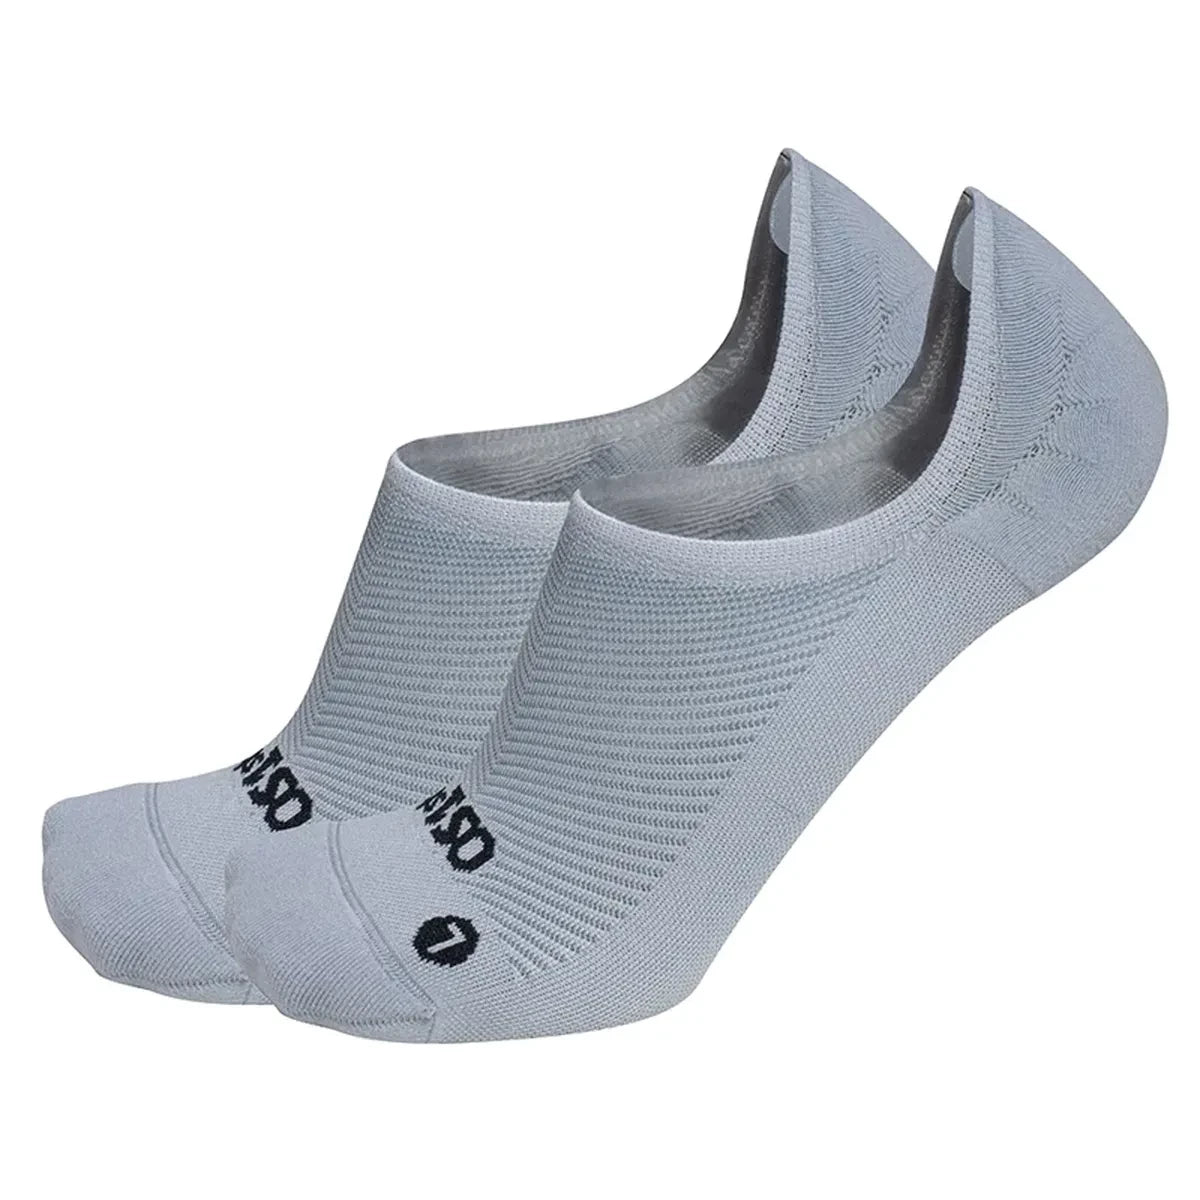 Os1st, Nekkid Comfort Sock No Show, Unisex, Grey